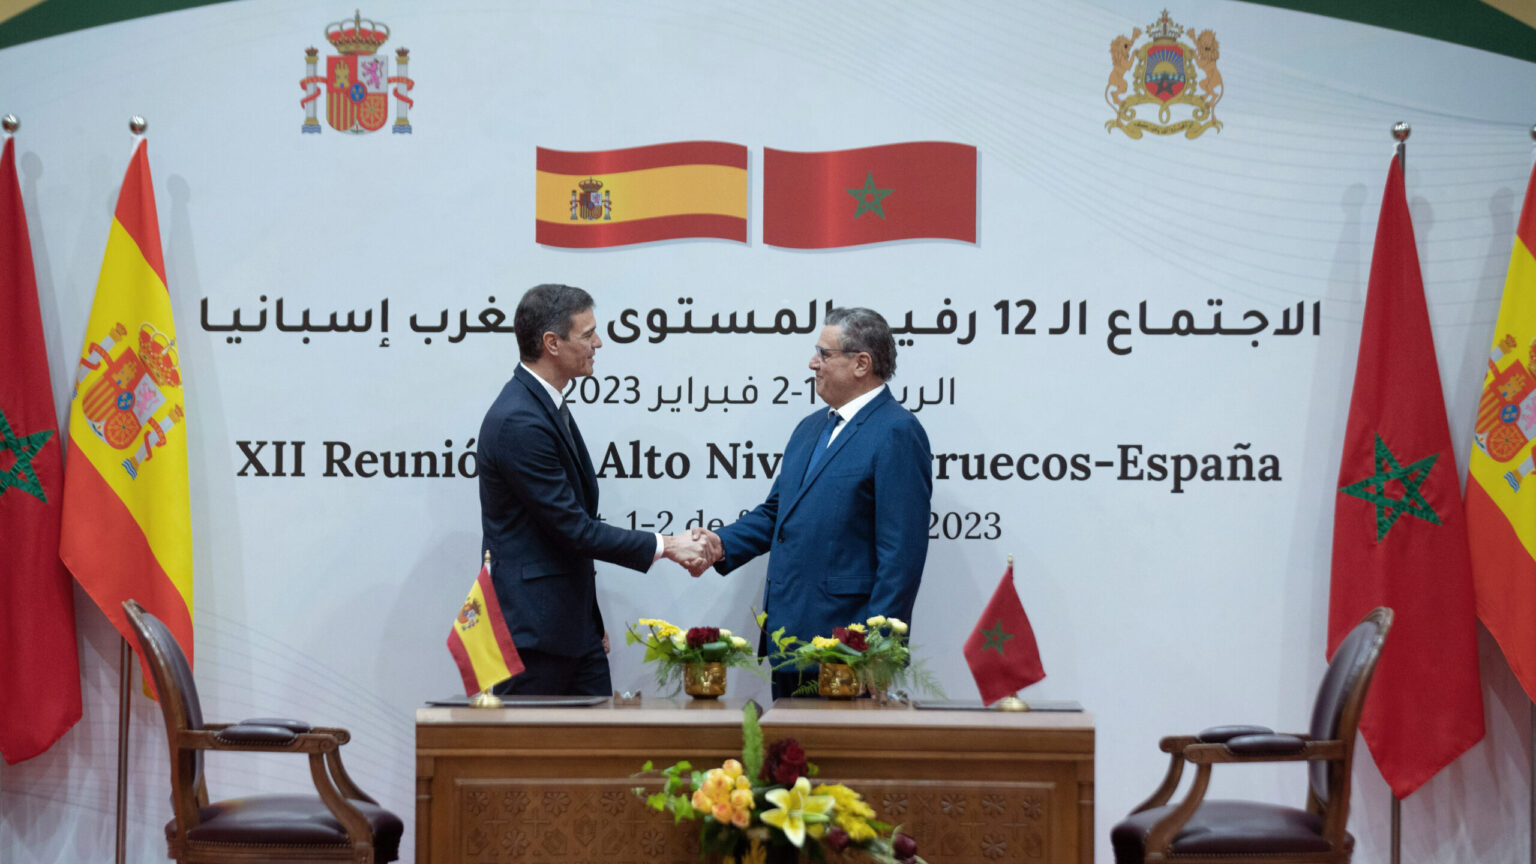 El Gobierno rechaza que Marruecos esté tras Pegasus pese a las sospechas de la UE